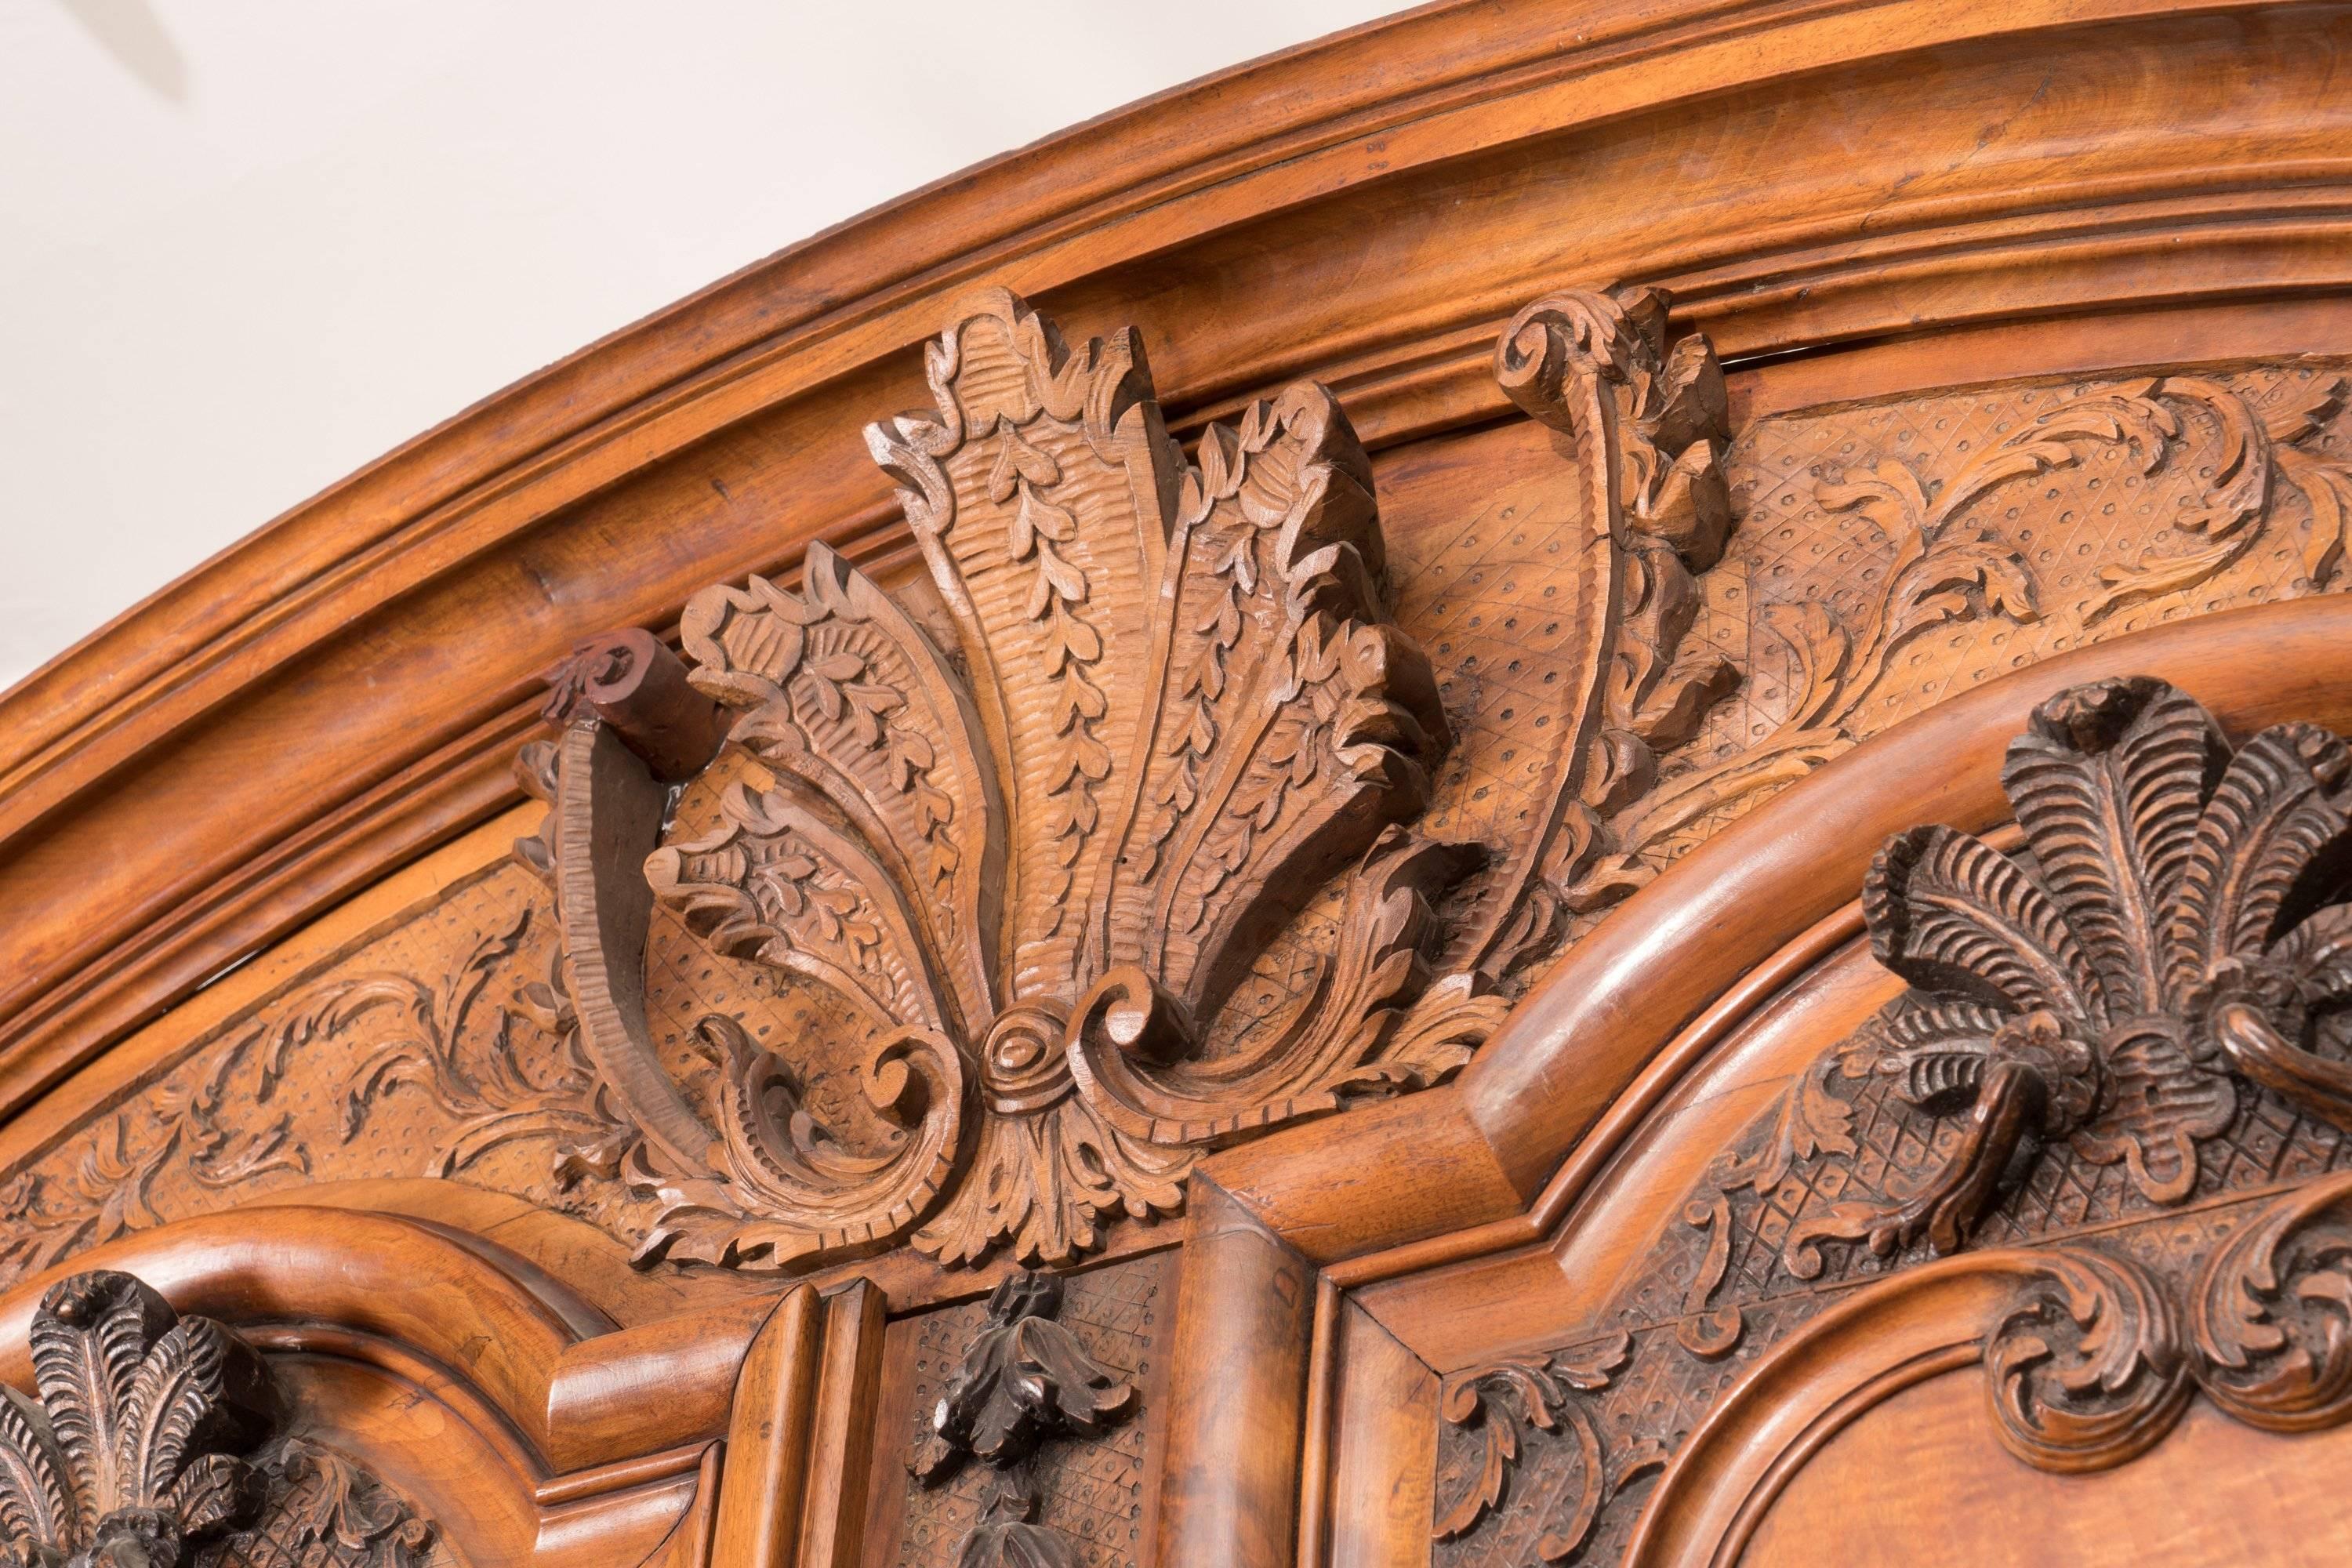 Wunderschön geschnitzter Nussbaumschrank aus dem 18. Jahrhundert mit originalen Regalen, Beschlägen und Schlüsseln. Die Patina und die Tiefe der Schnitzereien machen diesen Schrank zu einem echten Hingucker.